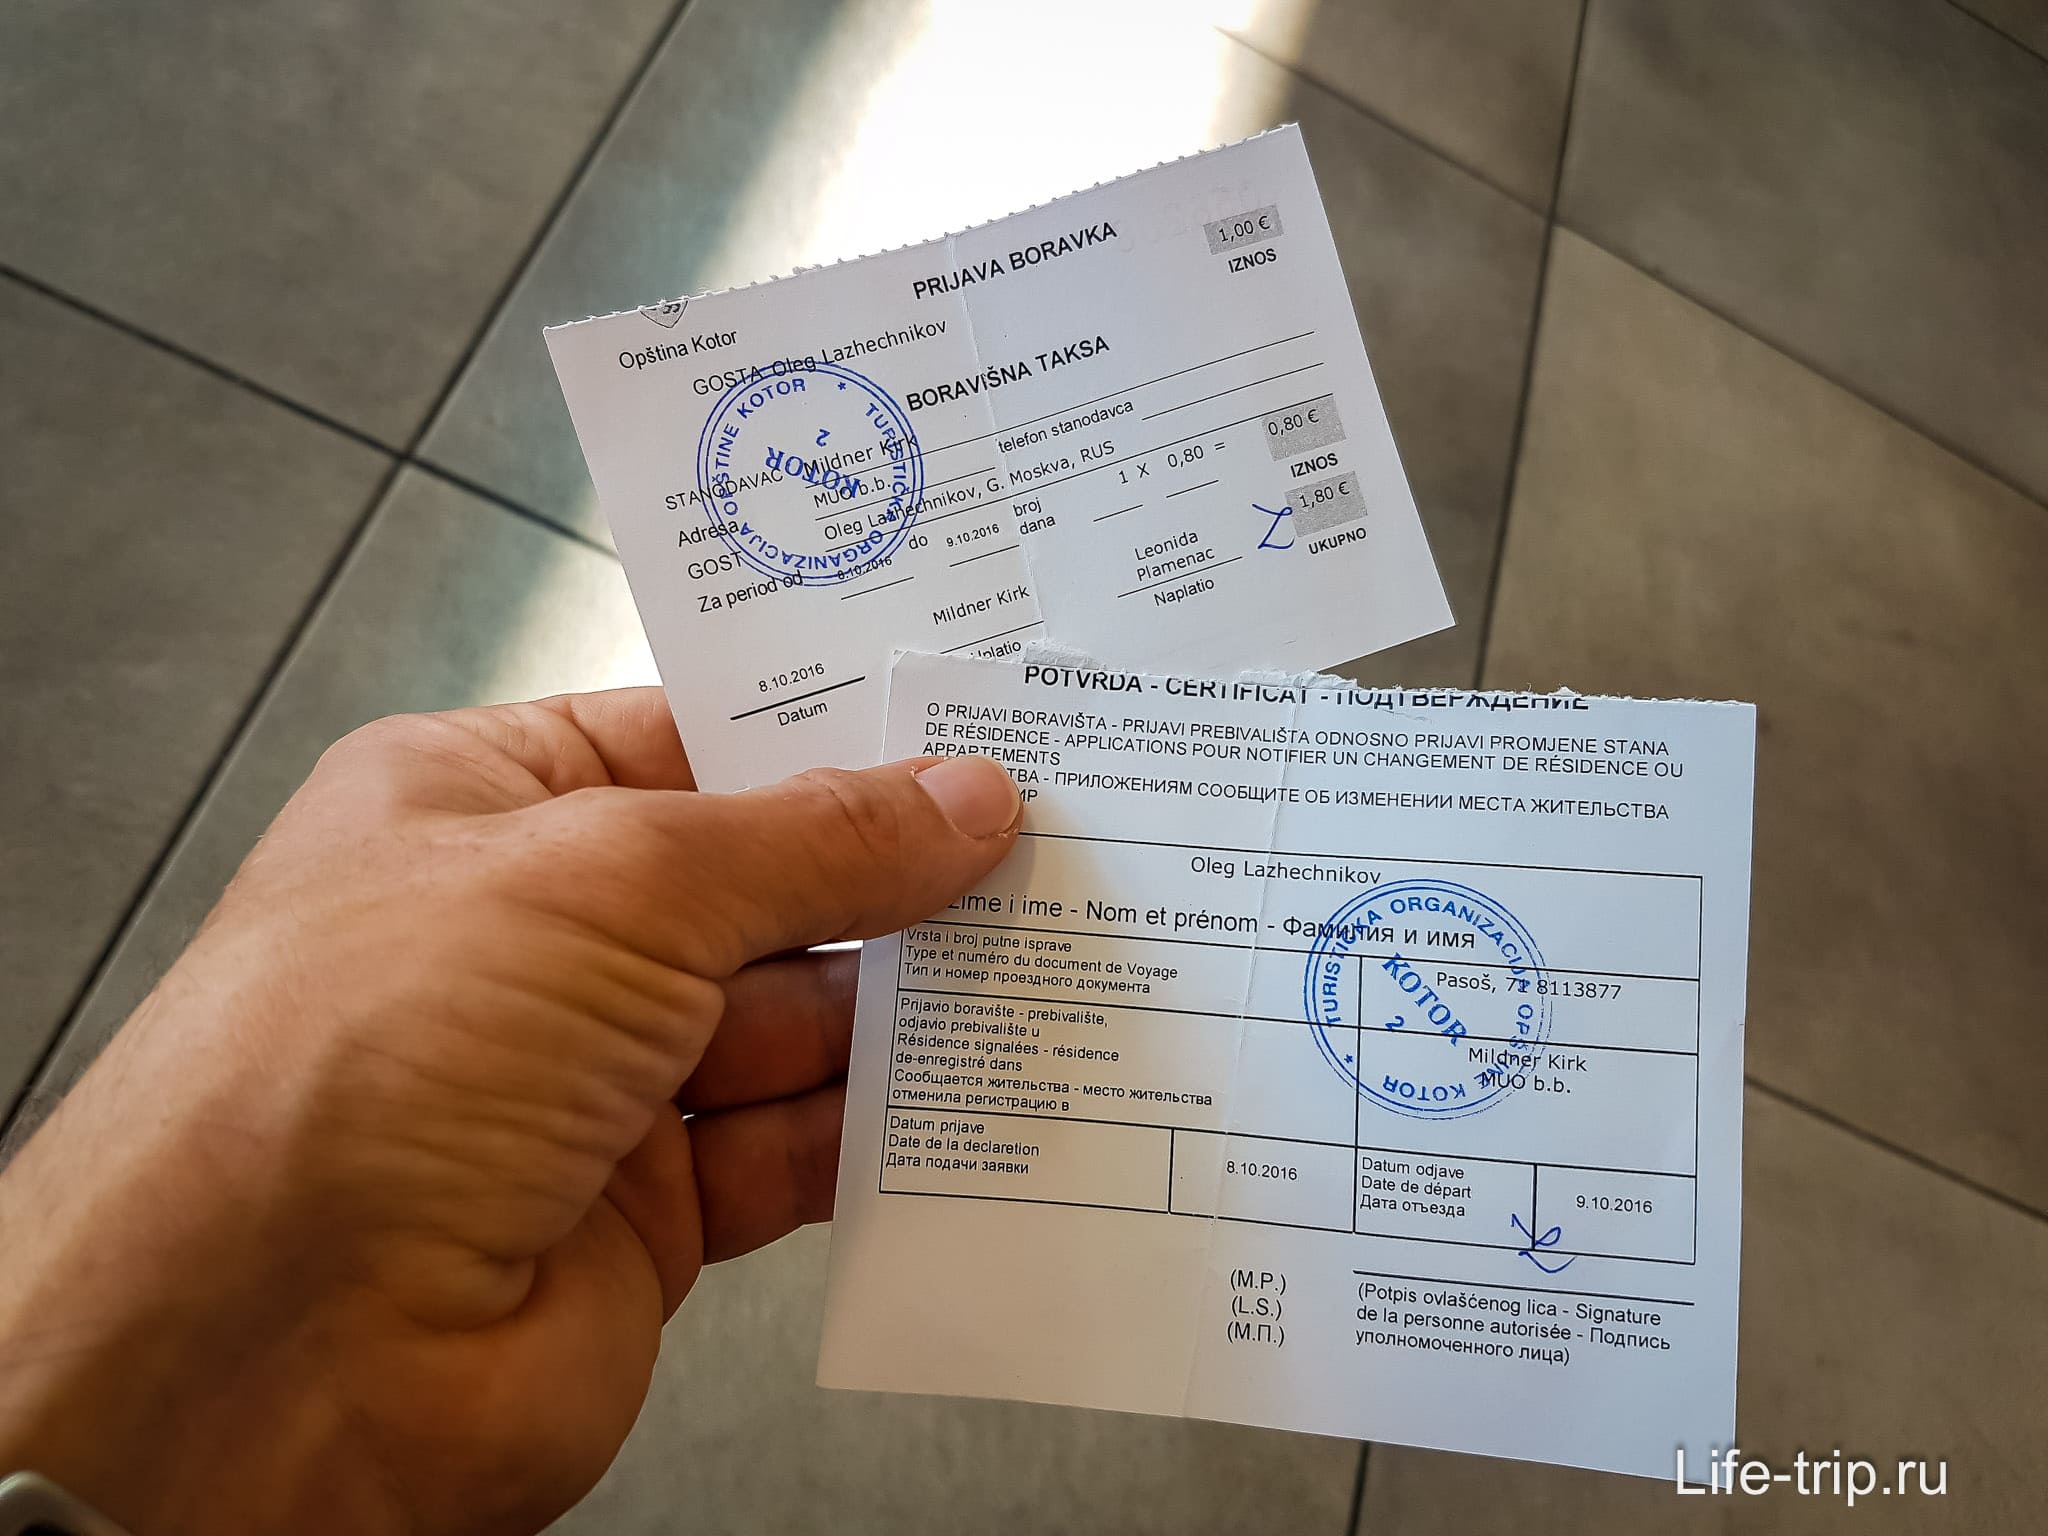 Виза в черногорию для россиян в 2021: нужна ли и как попасть без визы